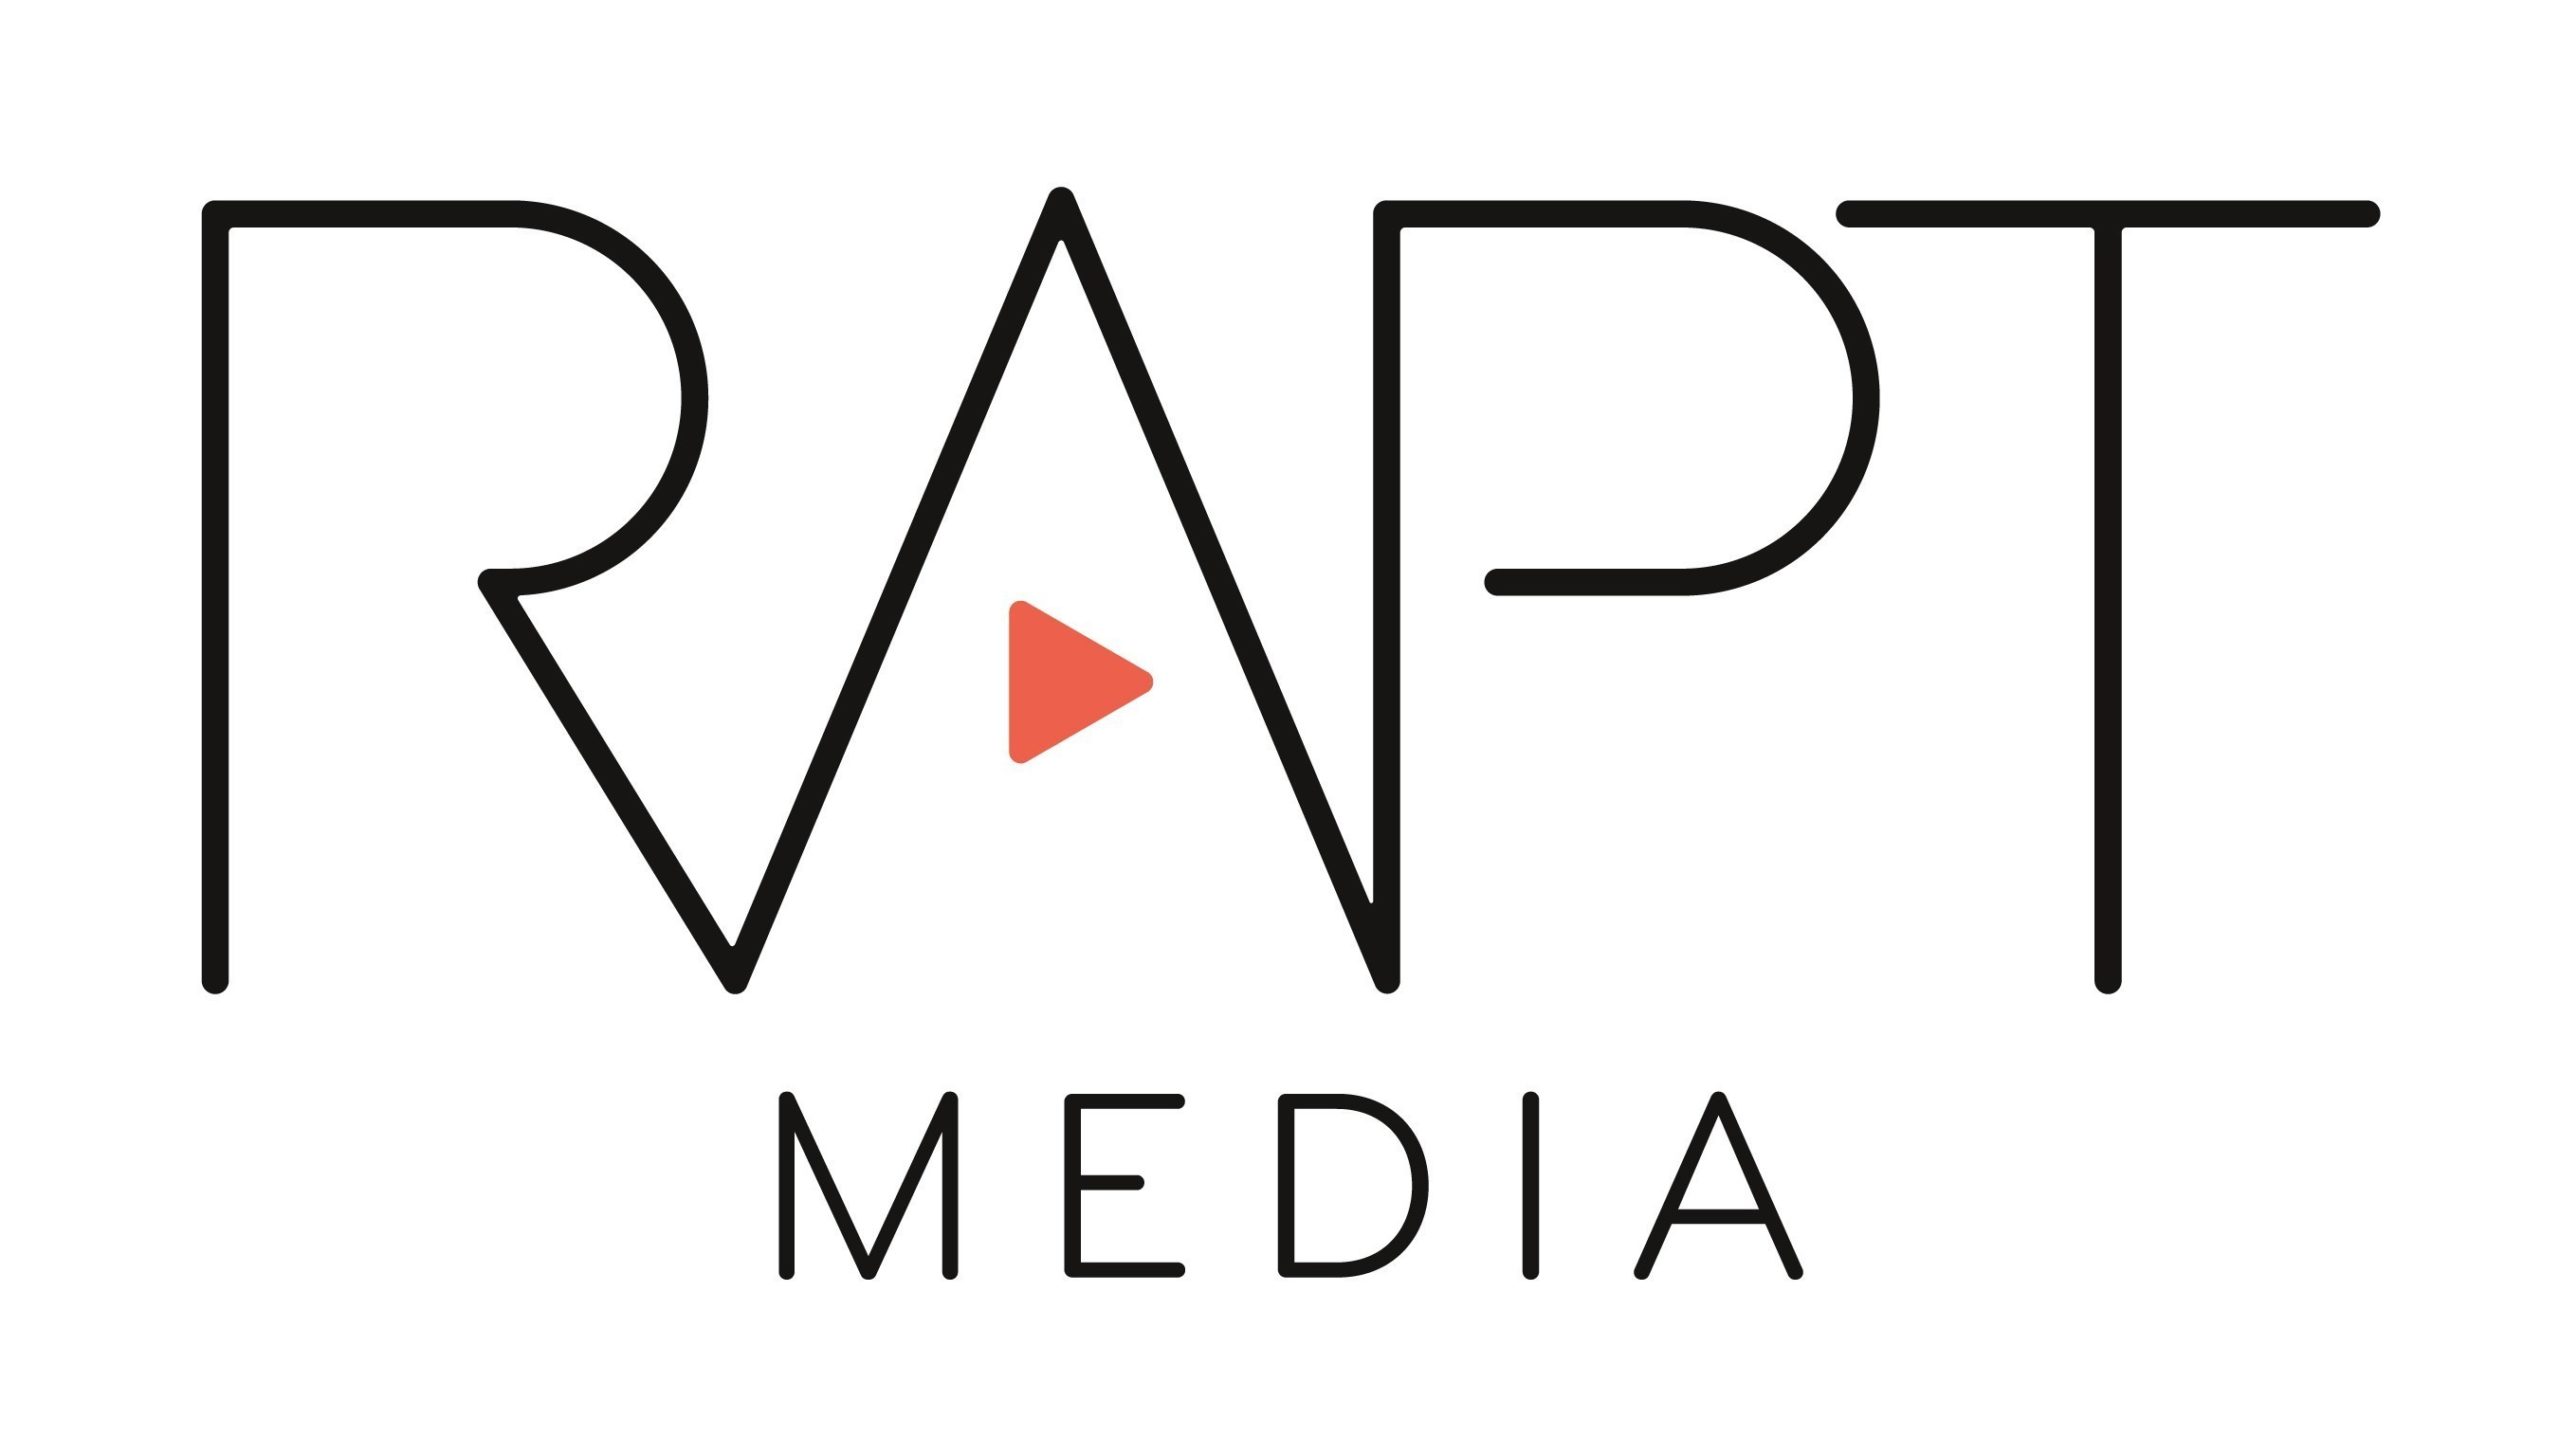 Rapt Media